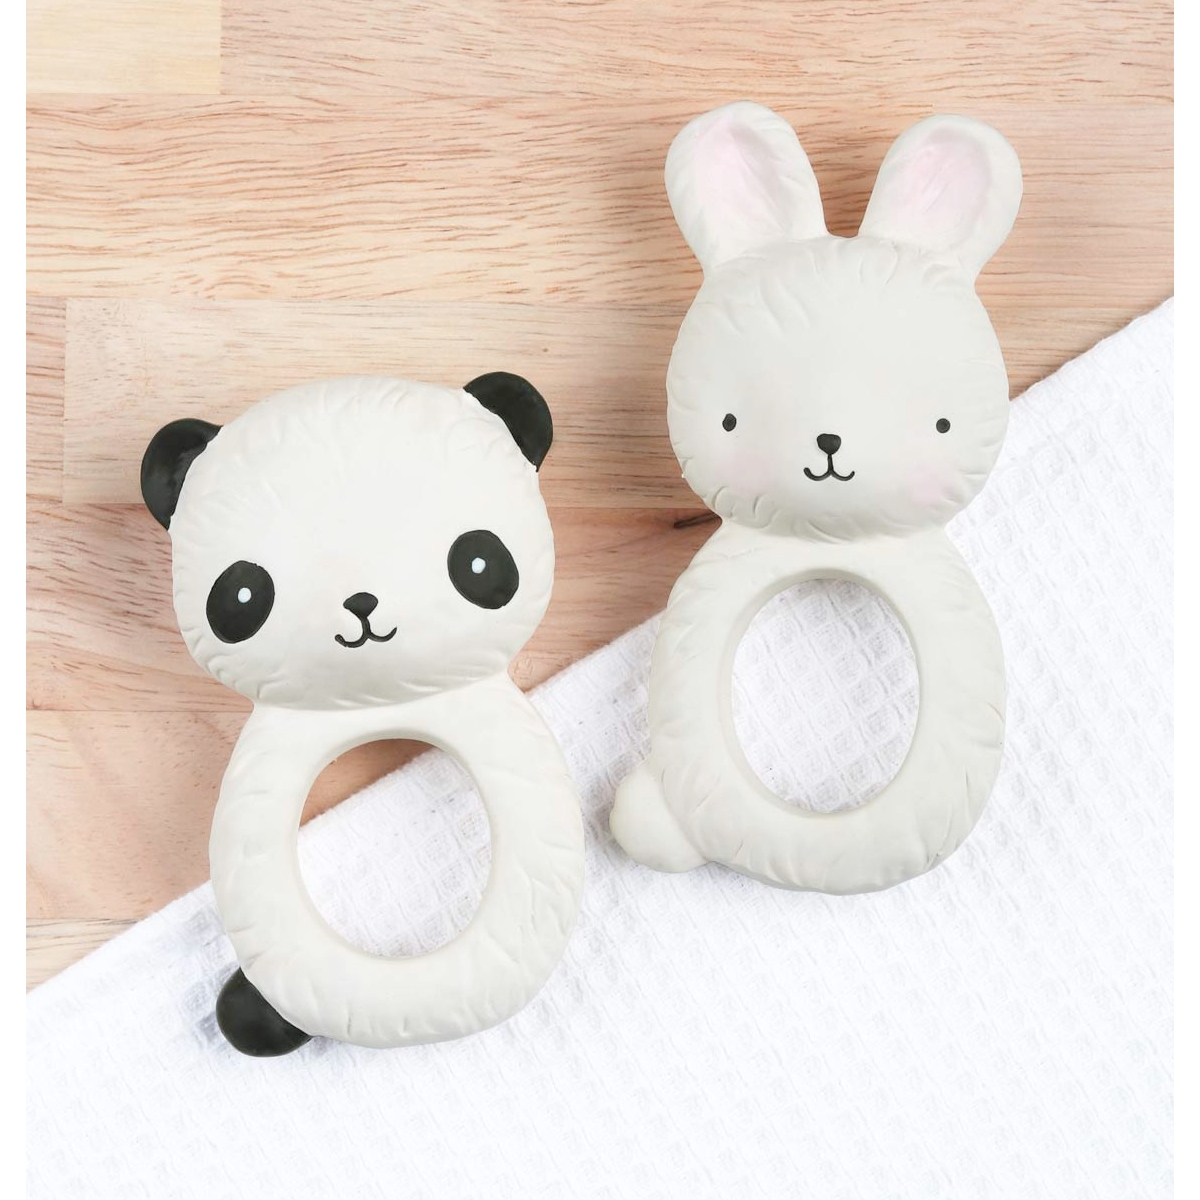 Bitring Panda - Little Lovely Company